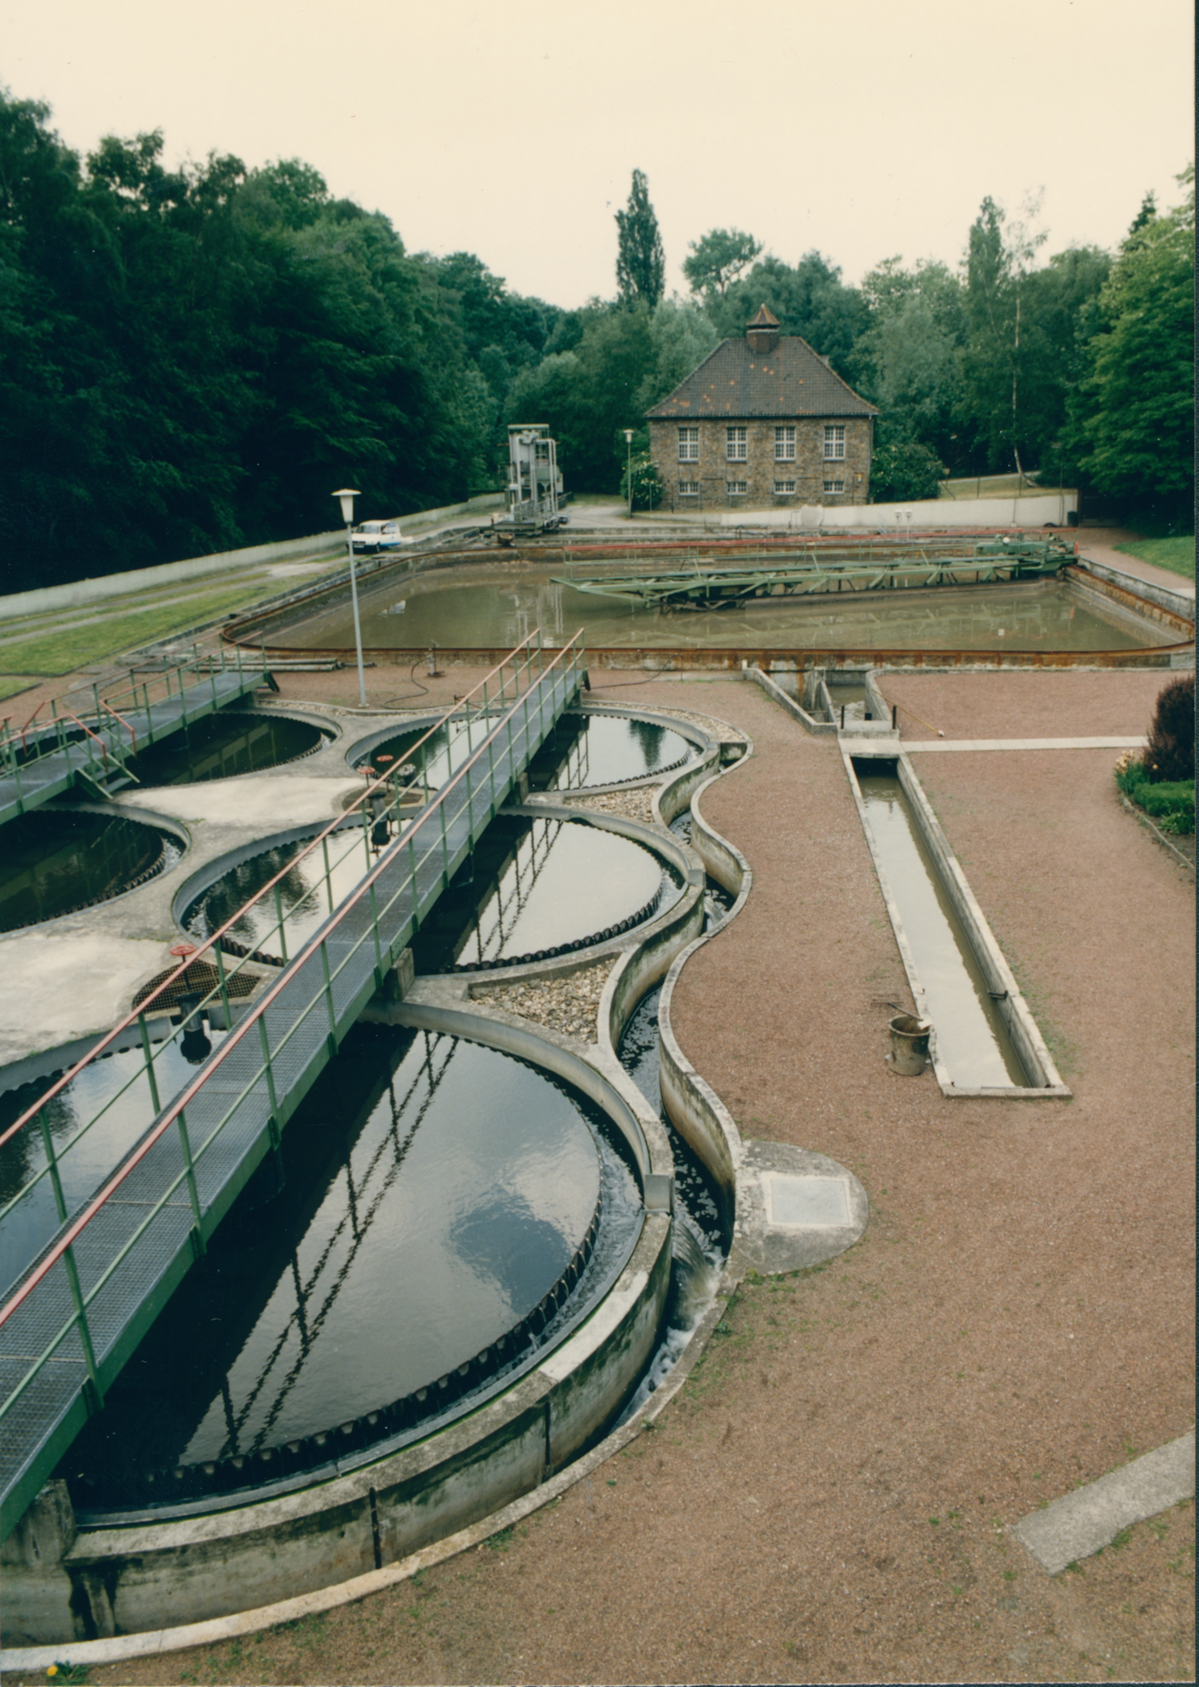 Mit der Historischen Kläranlage Rellinghausen wurde hinsichtlich der Abwasserwirtschaft Geschichte geschrieben: Sie war die erste Anlage zur Wasserreinigung mit Belebtschlamm auf dem europäischen Kontinent.